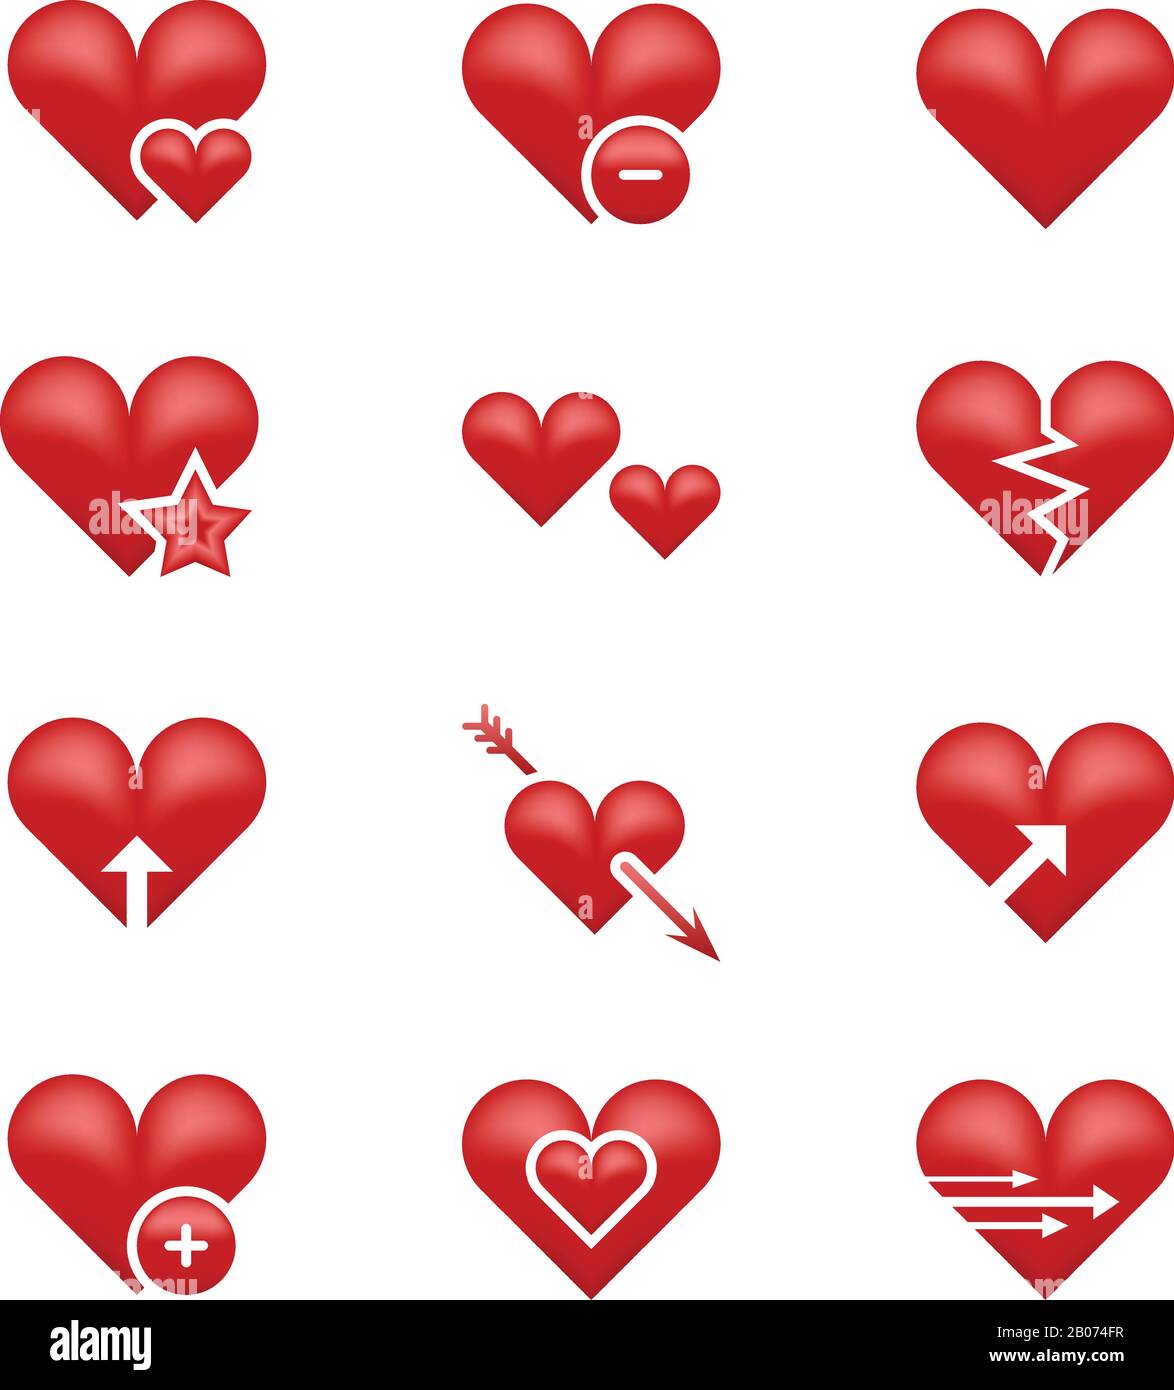 Herz liebt Emoji, Emoticons Vektor-Set. Abbildung: Gebrochenes Herz, Pfeil und Stern Stock Vektor